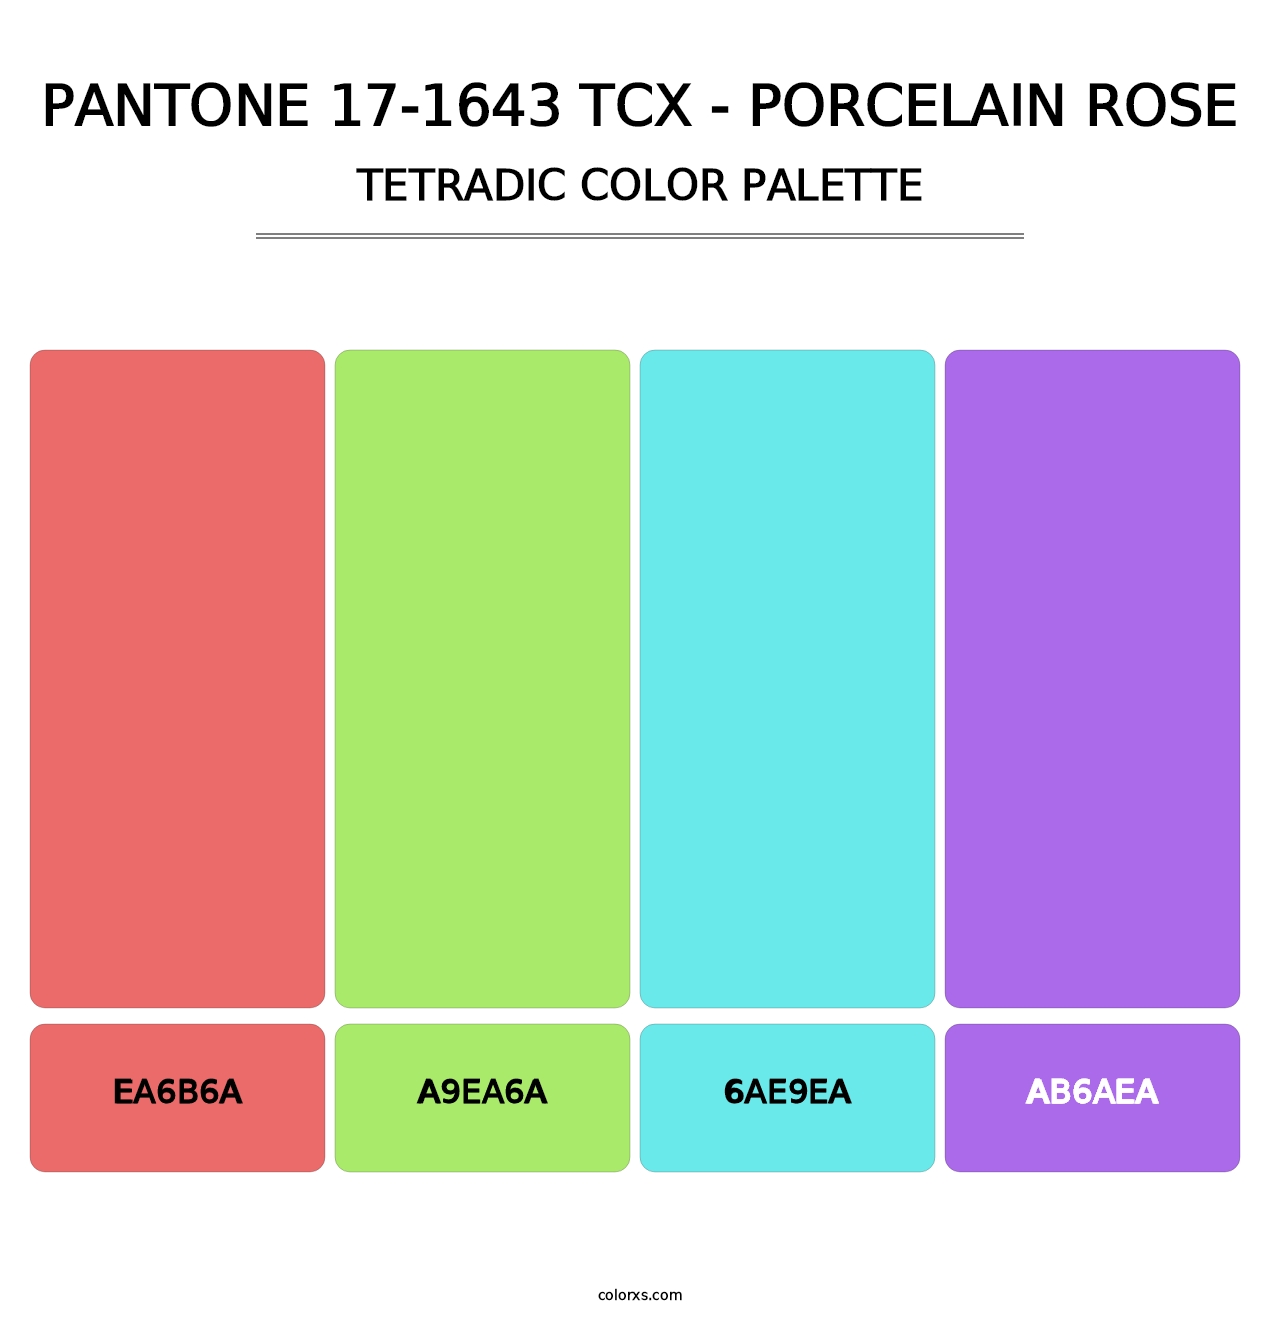 PANTONE 17-1643 TCX - Porcelain Rose - Tetradic Color Palette